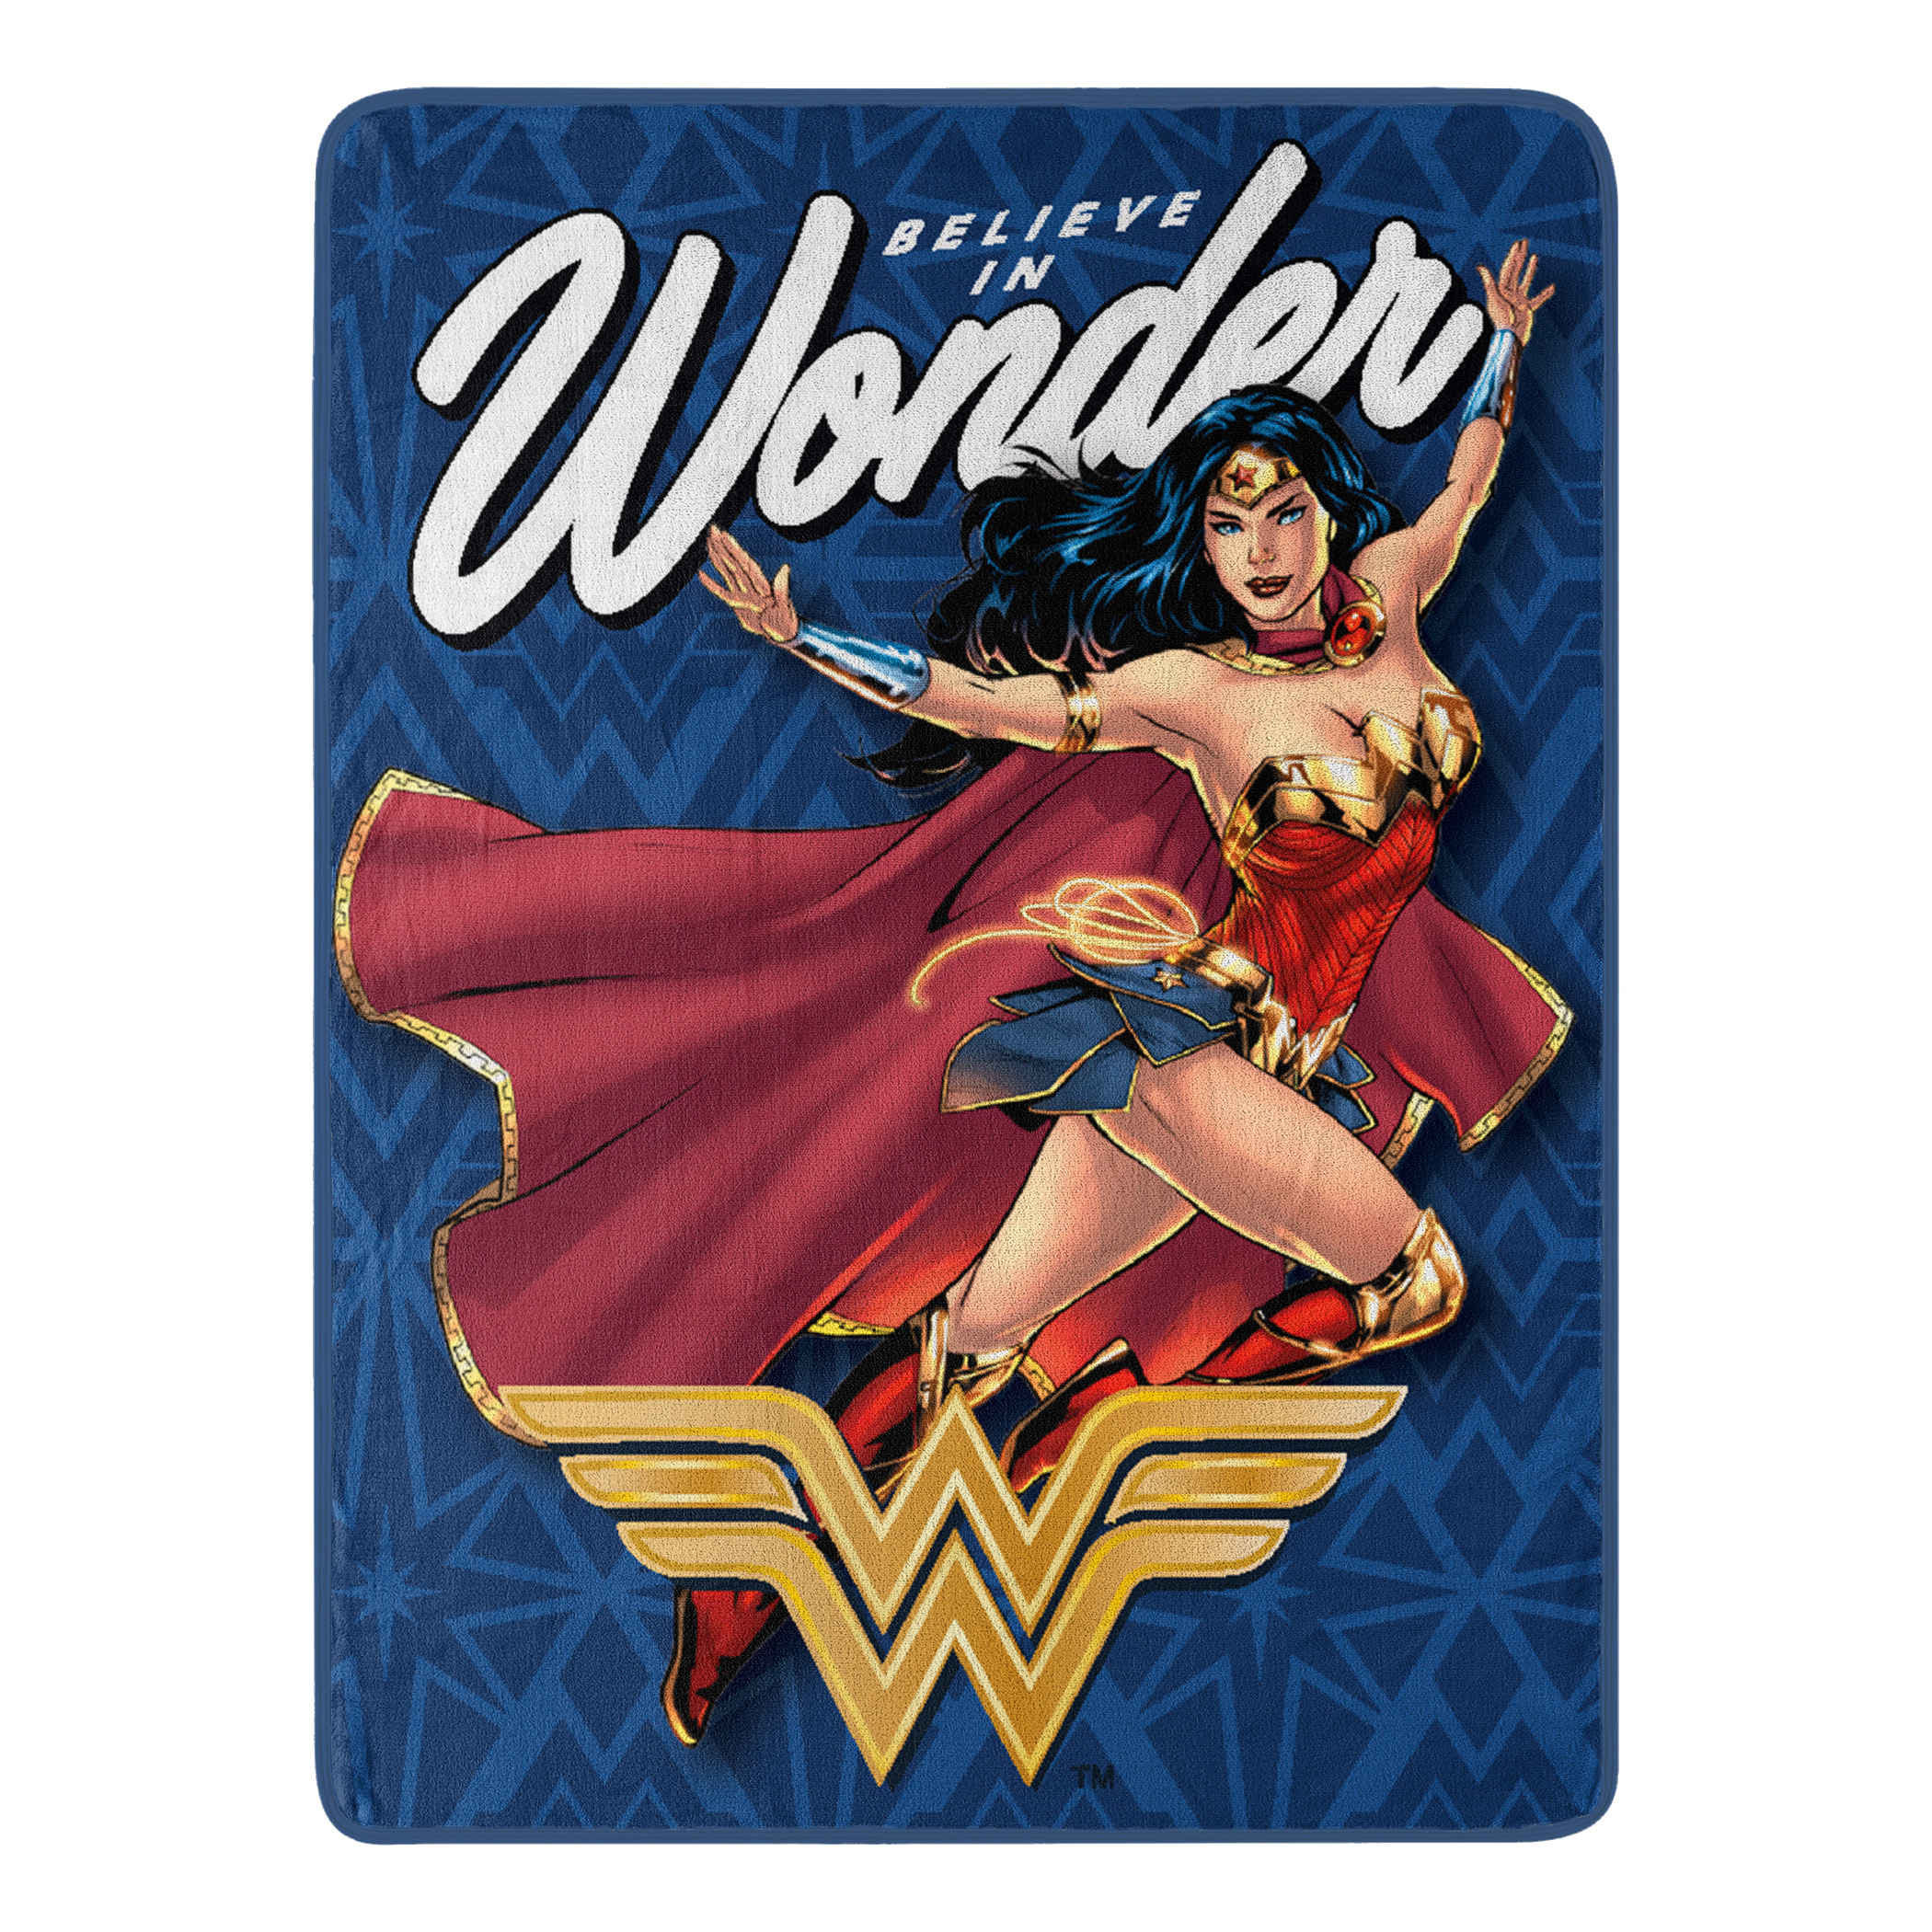 Wonder Woman Believe Micro Raschel Throw Blanket 46"x60"